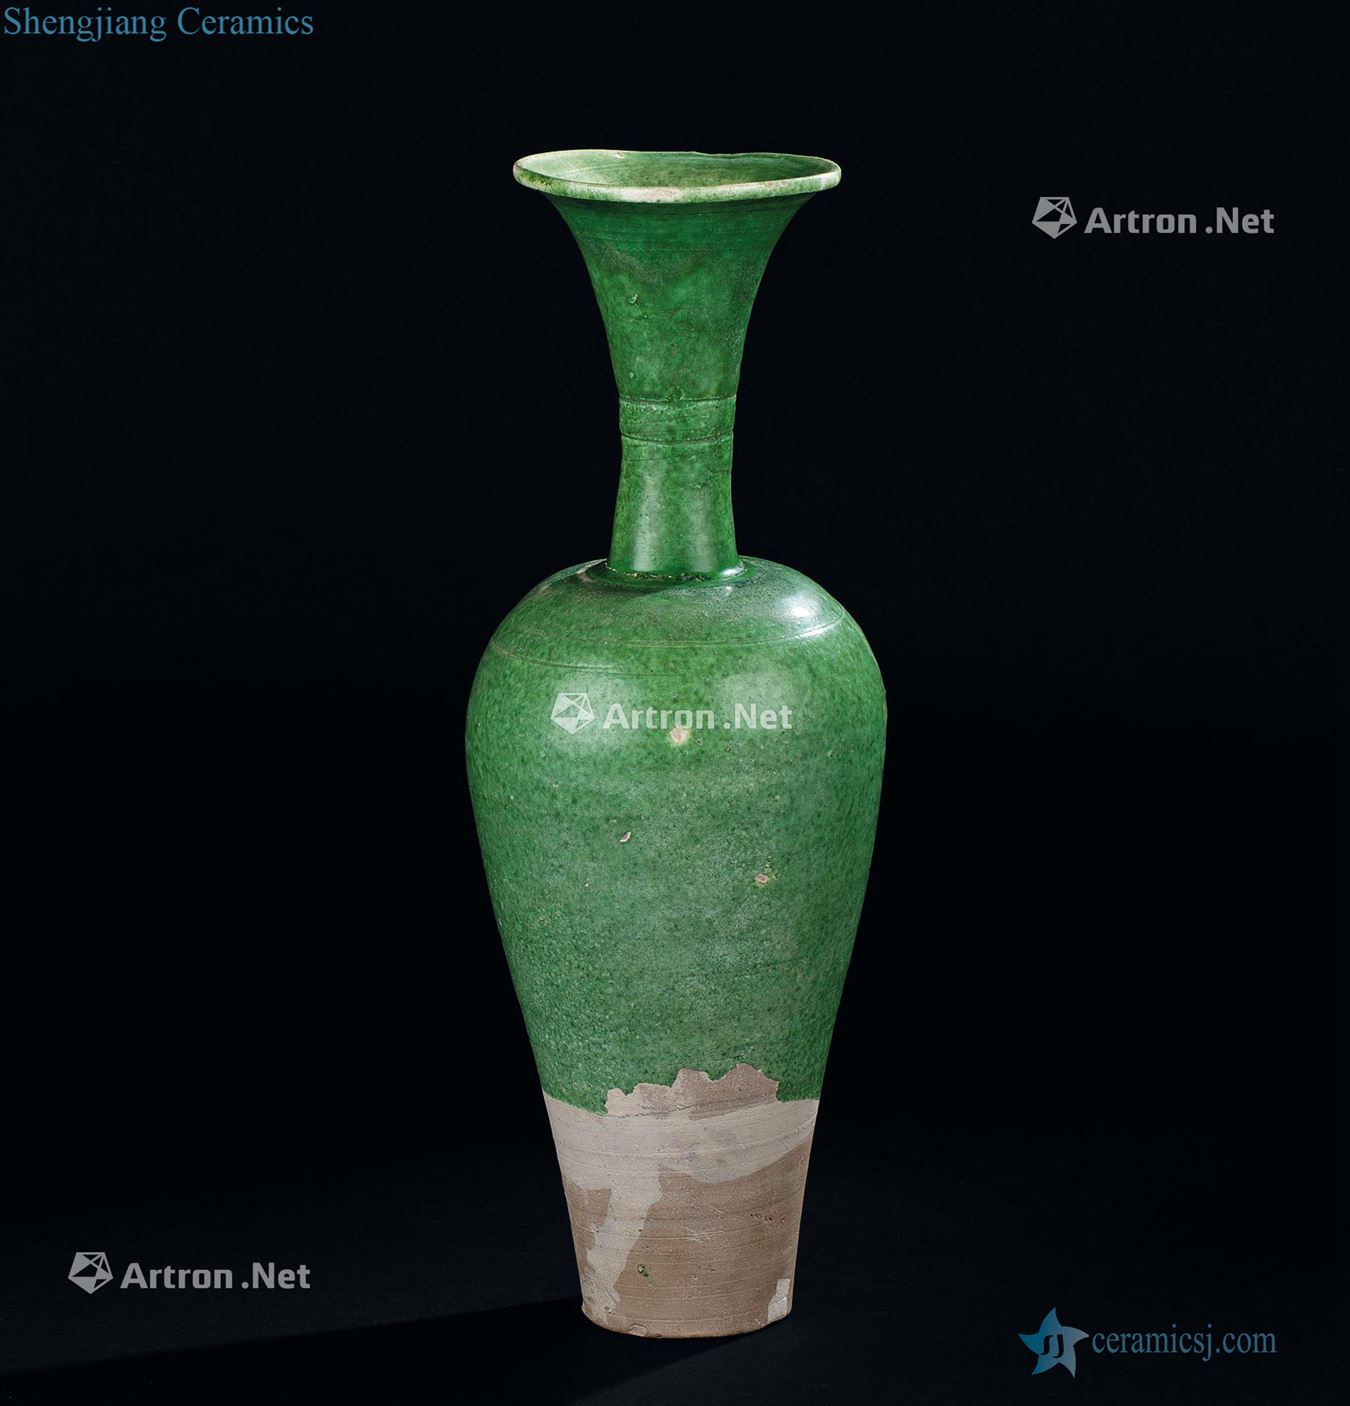 Liao dynasty (907-1125), green glazed flask